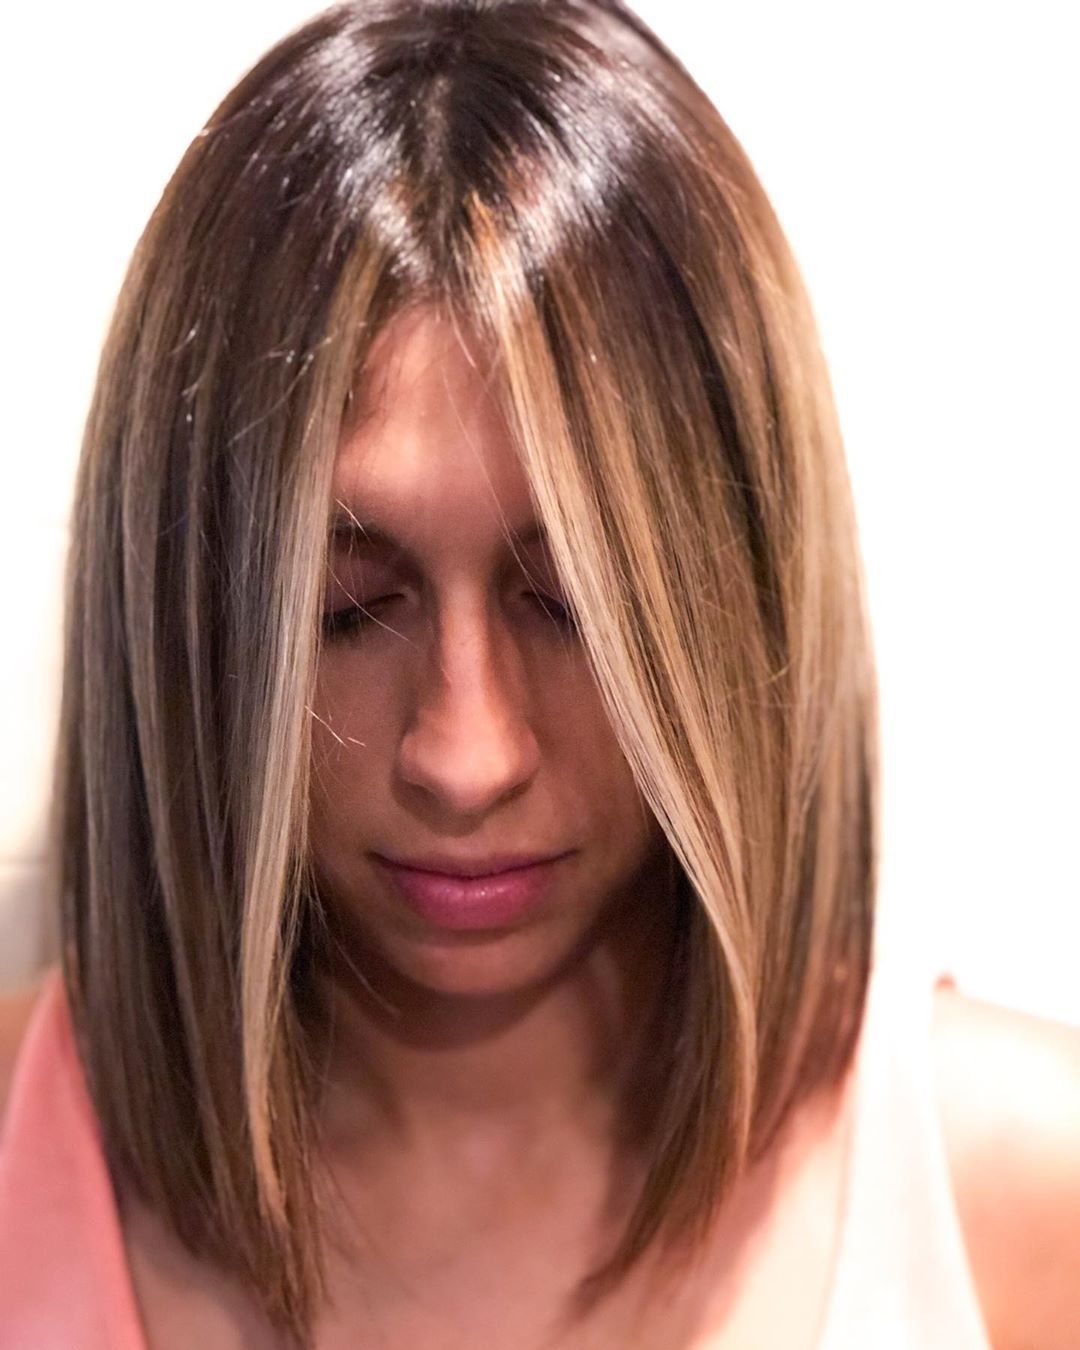 контуринг волос техника окрашивания фото